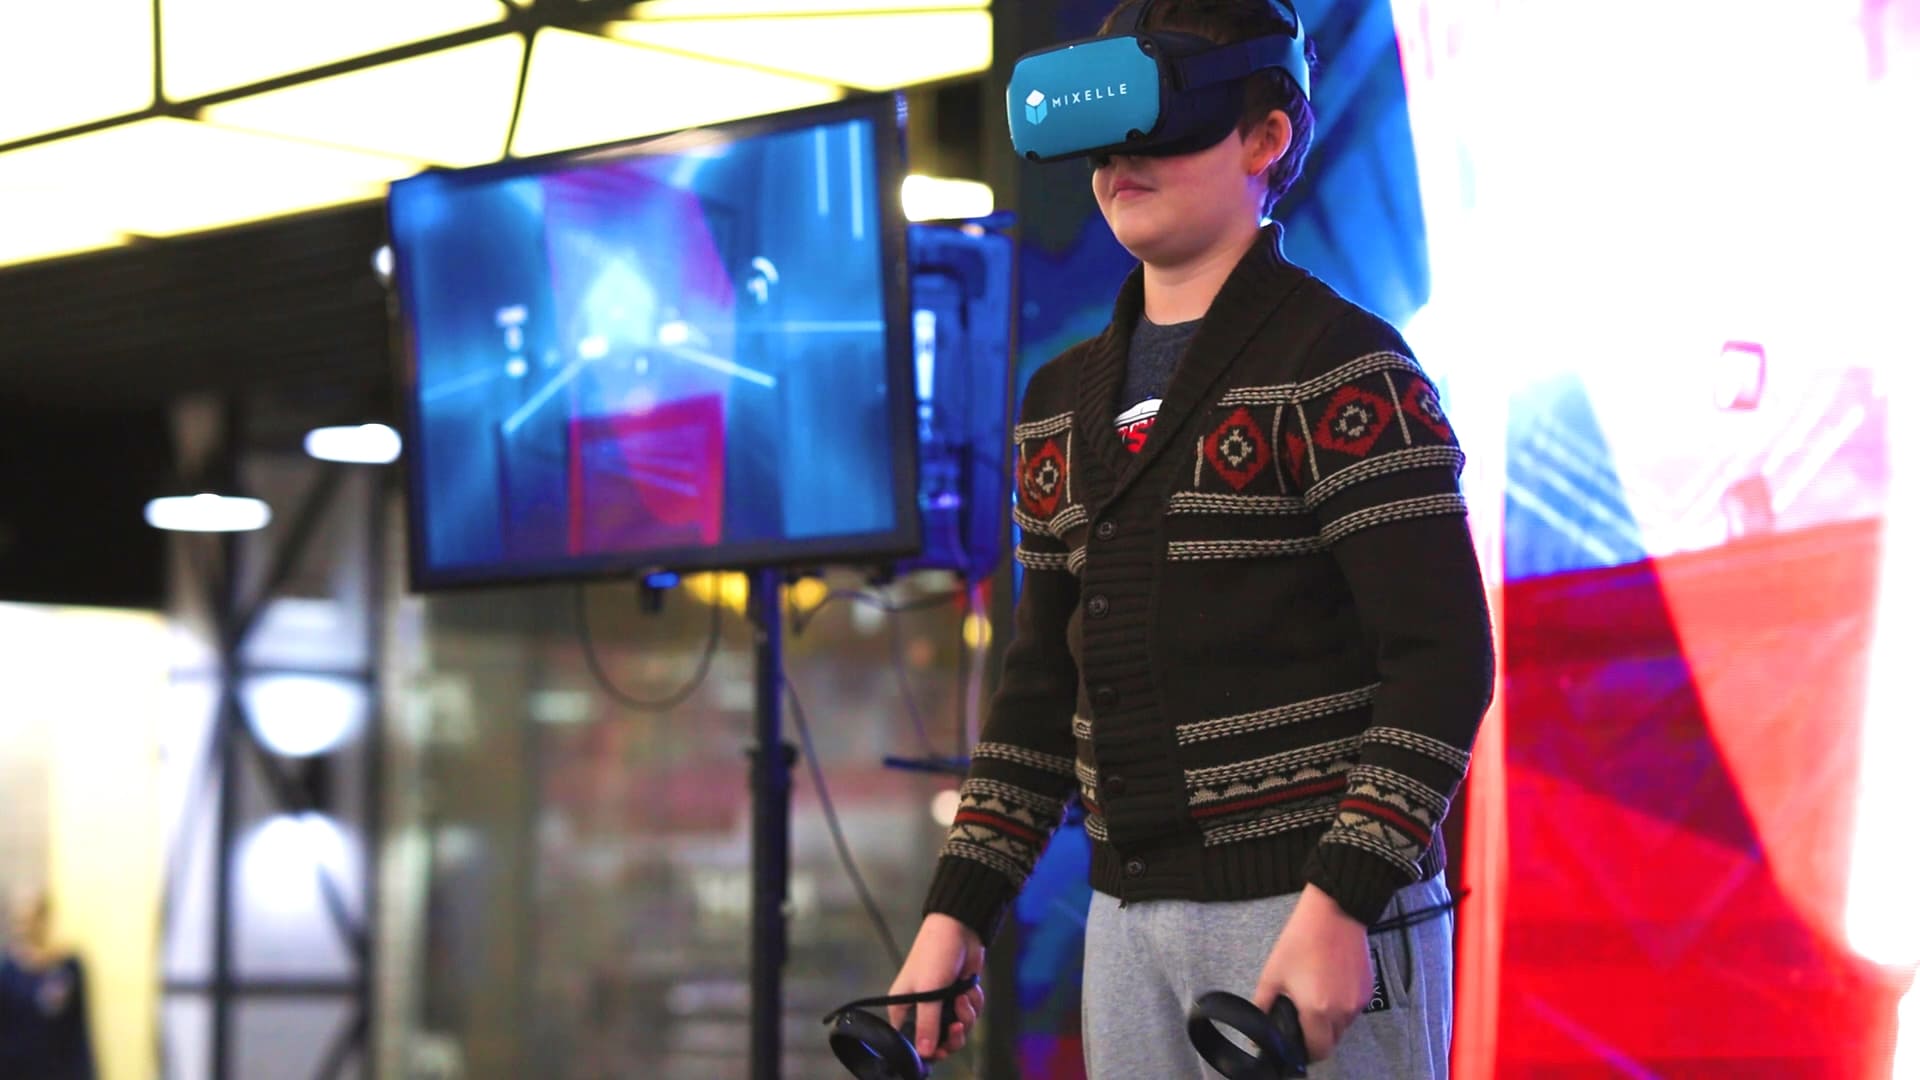 Аренда аттракциона "VR Джедай" на выездное мероприятие 